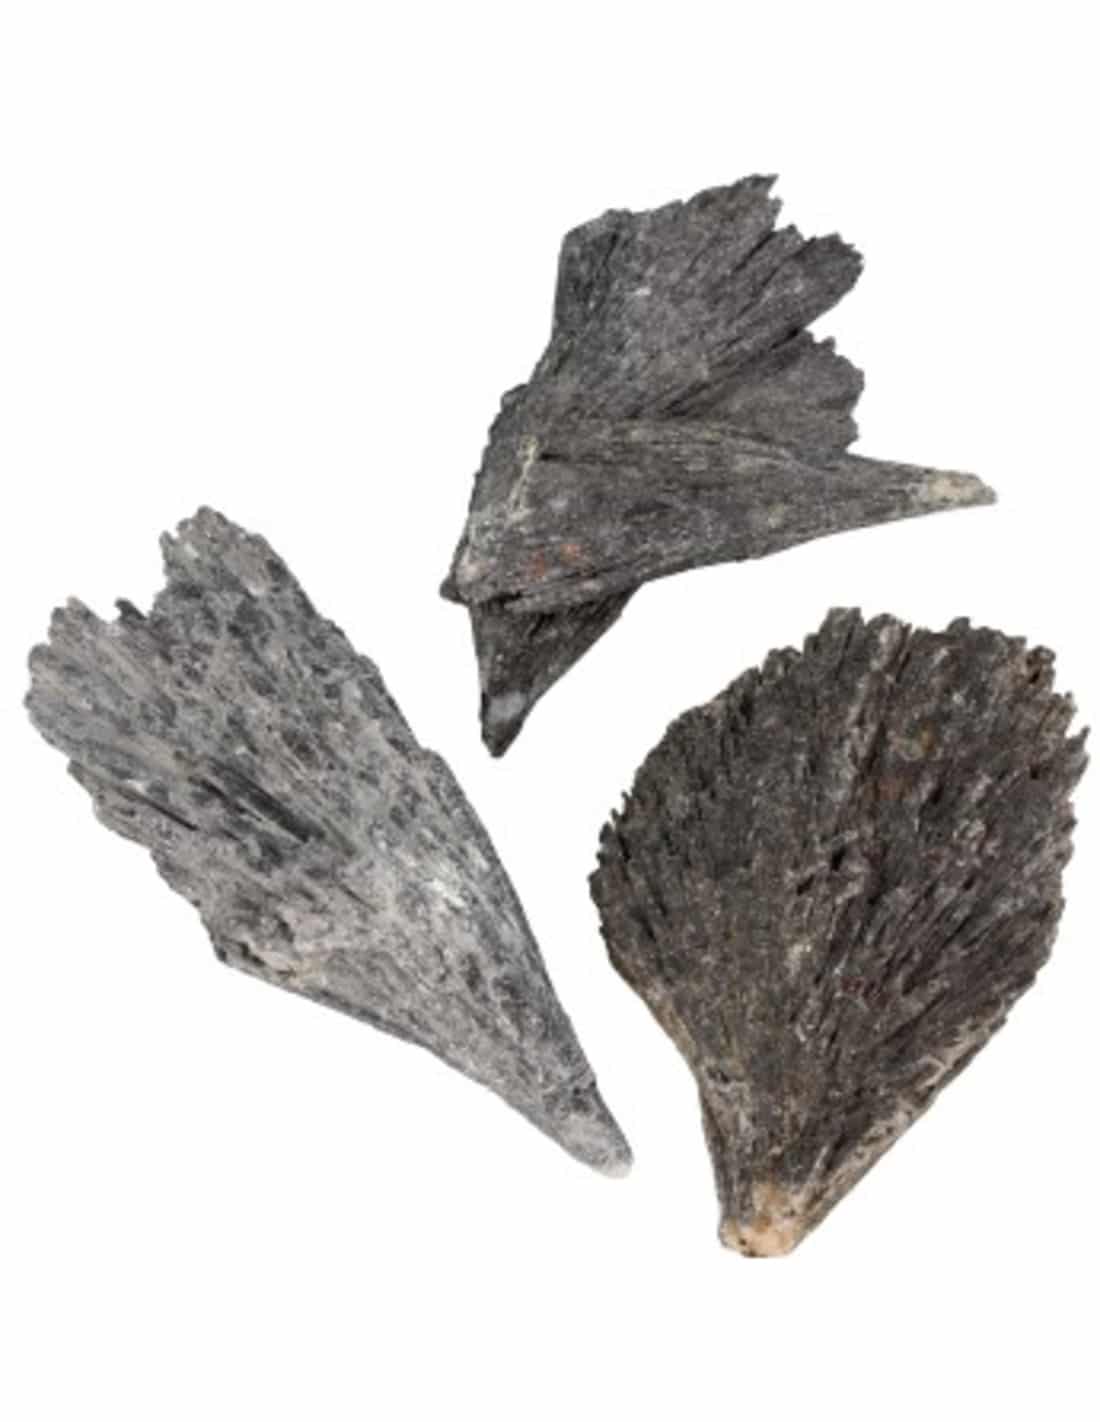 Ruwe Kyaniet Edelsteen 5 - 10 cm stukken (150 gram)